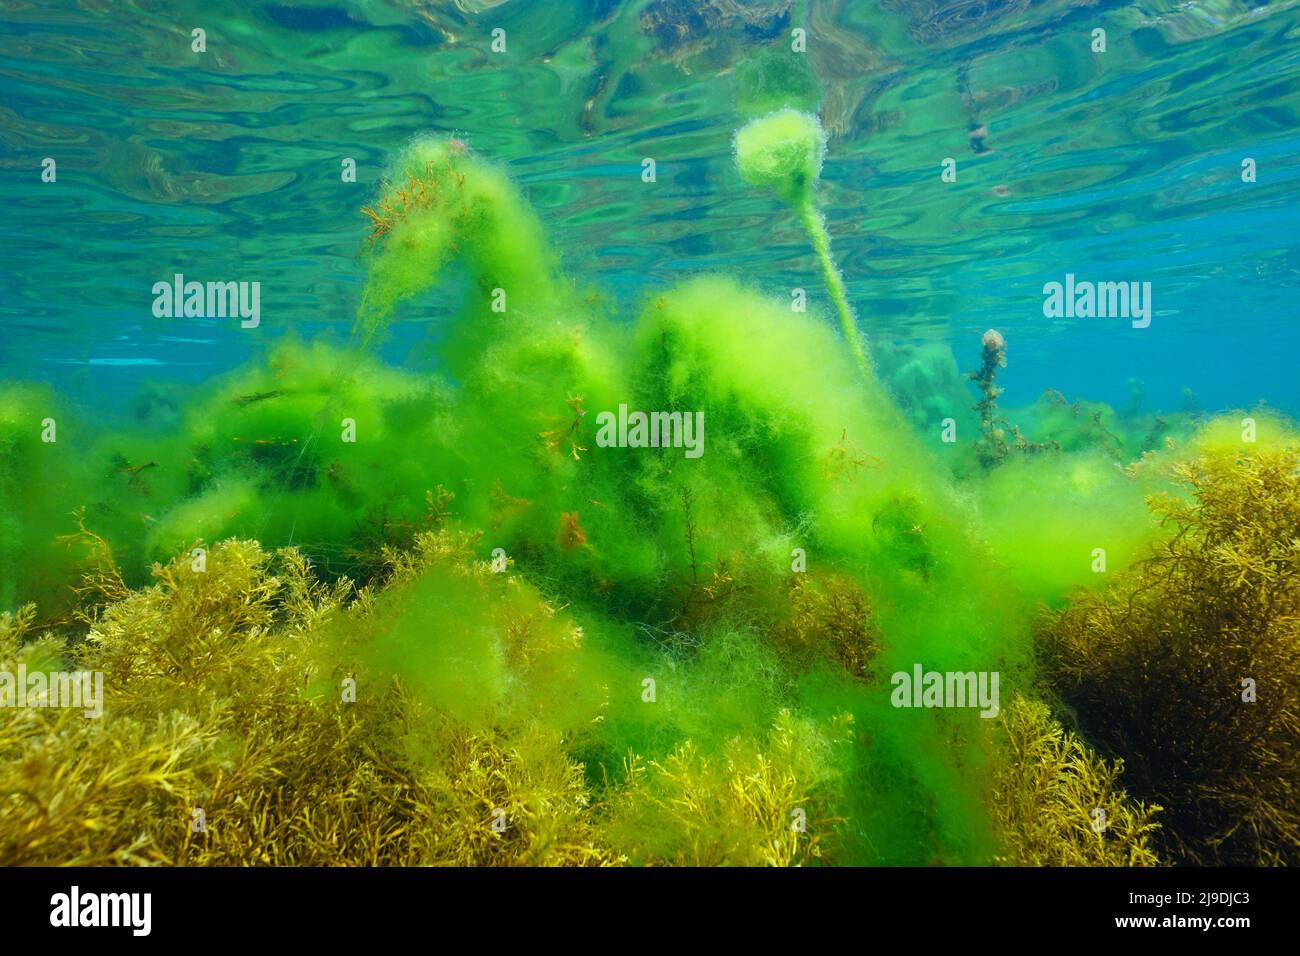 Fleur d'algues sous l'eau dans l'océan, algues filamenteuses vertes qui poussent sur des algues brunes, Atlantique est, Espagne, Galice Banque D'Images